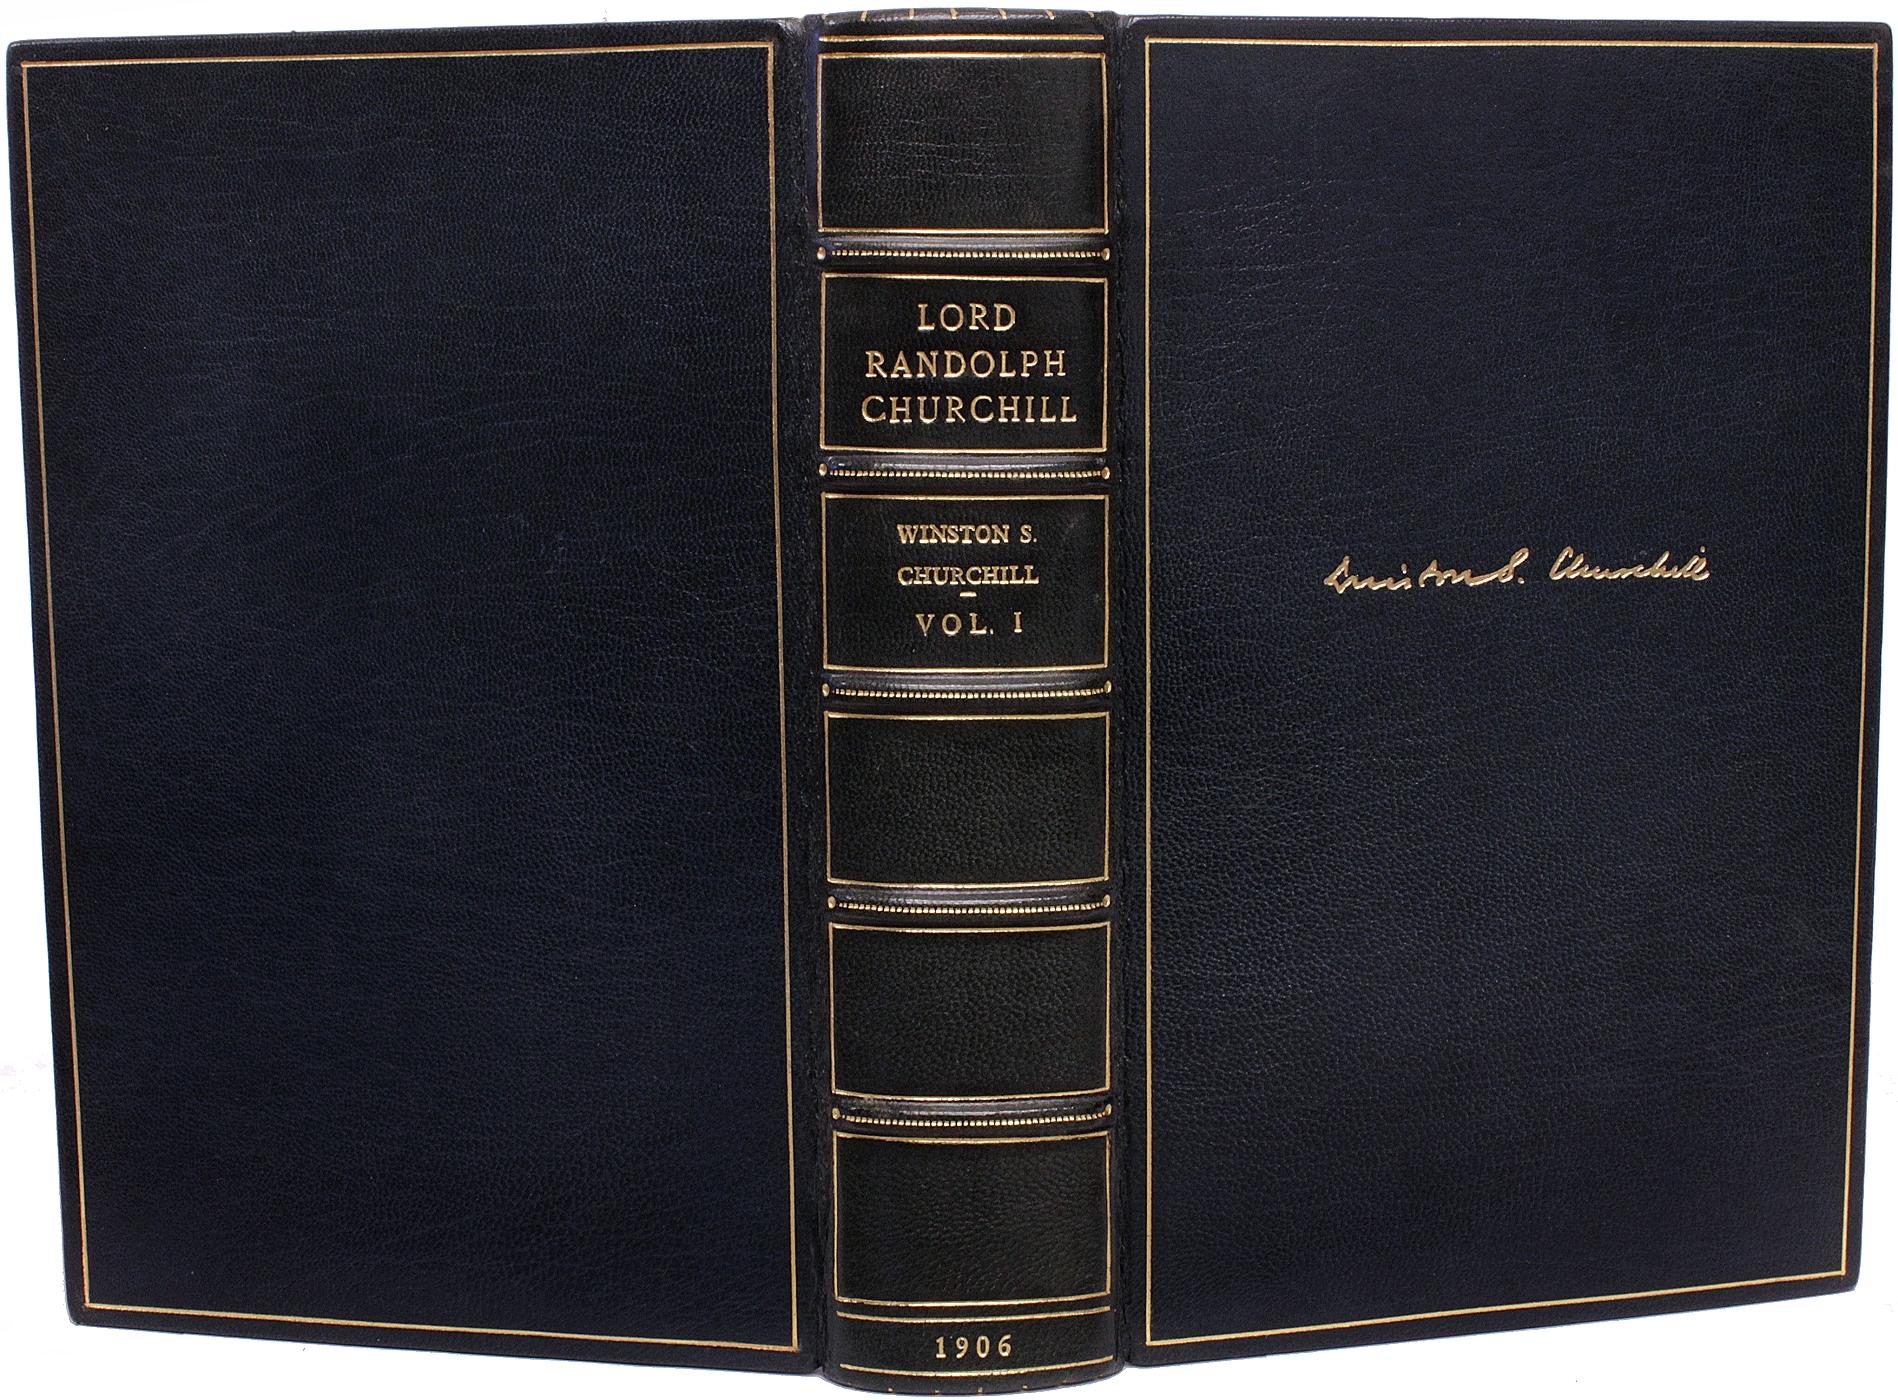 AUTEUR : CHURCHILL, Winston. 

TITRE : Lord Randolph Churchill.

ÉDITEUR : Londres : Hodder & Stoughton, 1906.

DESCRIPTION : PREMIÈRE ÉDITION. 2 volumes, 8-11/16